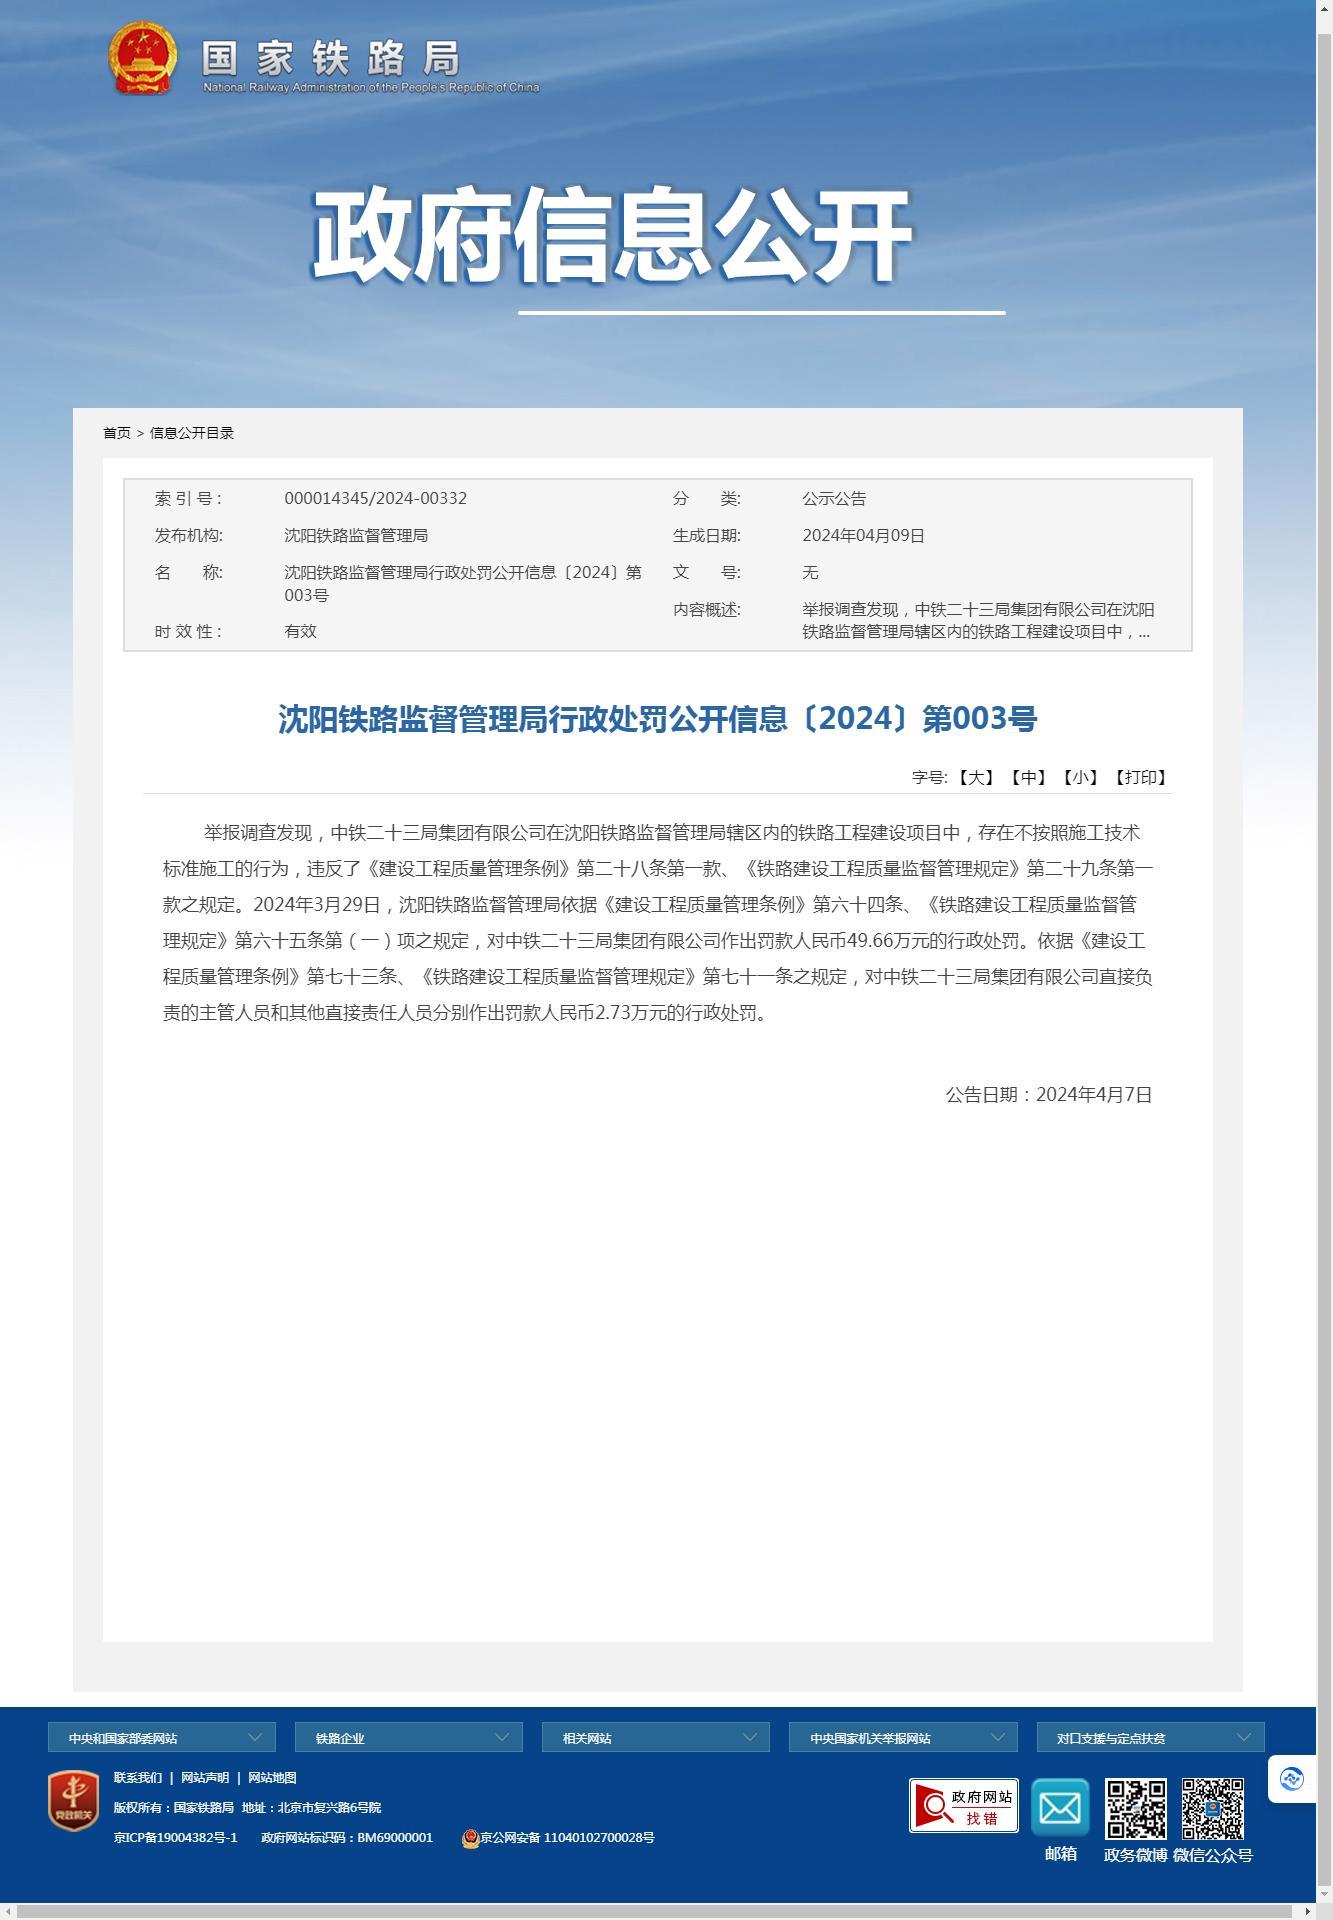 中铁二十三局集团有限公司因不按照施工技术标准施工被罚49.66万元 